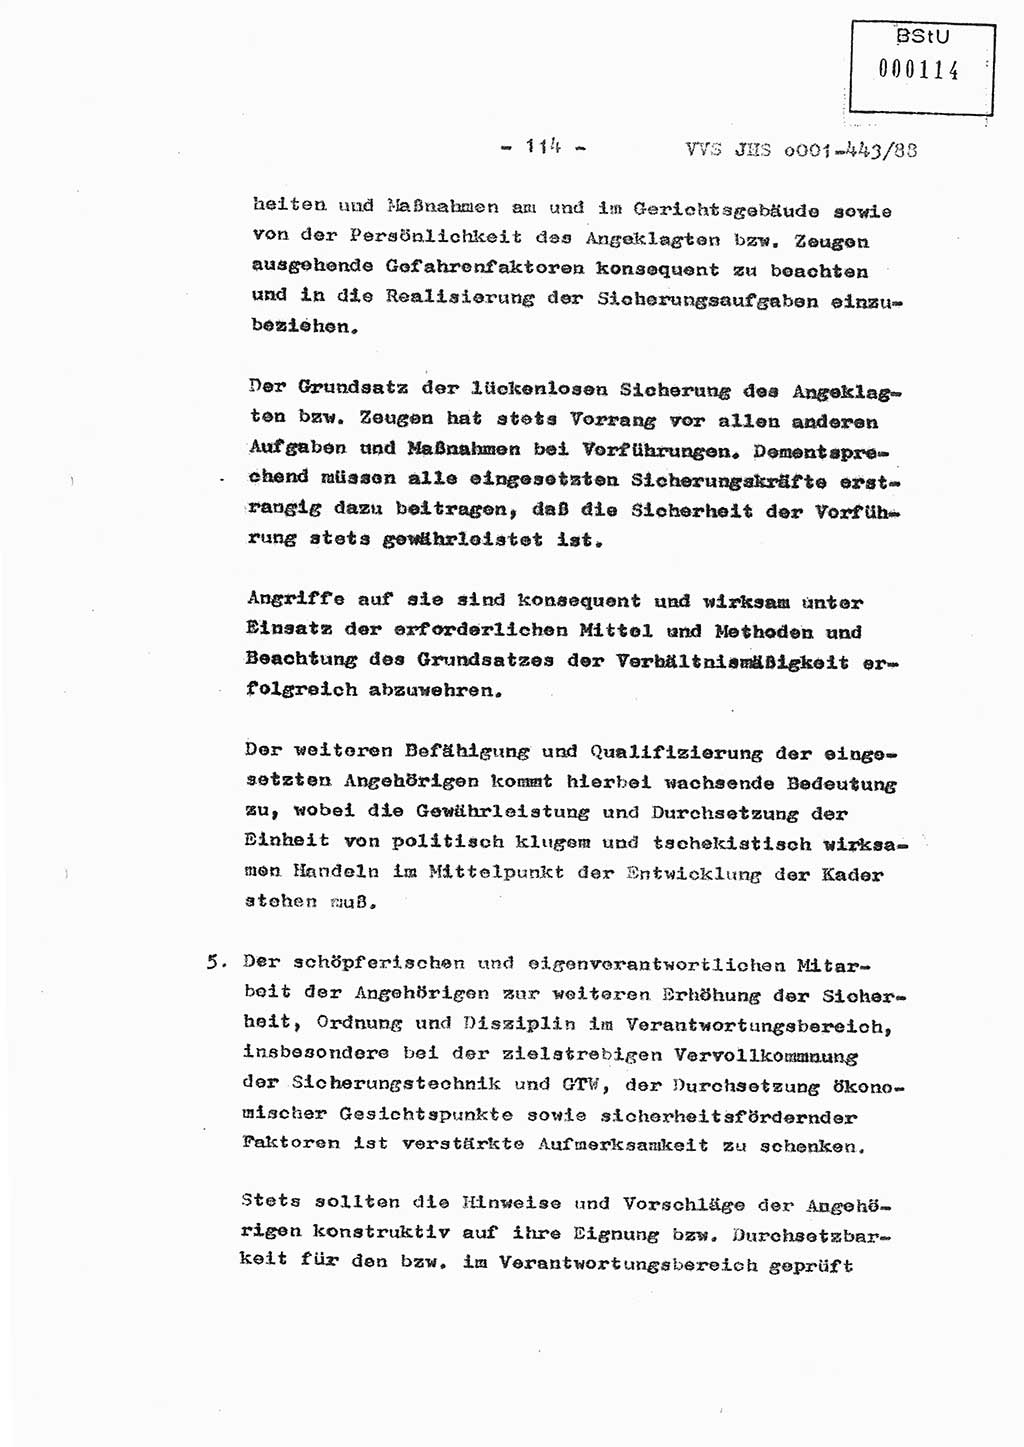 Diplomarbeit Hauptmann Michael Rast (Abt. ⅩⅣ), Major Bernd Rahaus (Abt. ⅩⅣ), Ministerium für Staatssicherheit (MfS) [Deutsche Demokratische Republik (DDR)], Juristische Hochschule (JHS), Vertrauliche Verschlußsache (VVS) o001-443/88, Potsdam 1988, Seite 114 (Dipl.-Arb. MfS DDR JHS VVS o001-443/88 1988, S. 114)